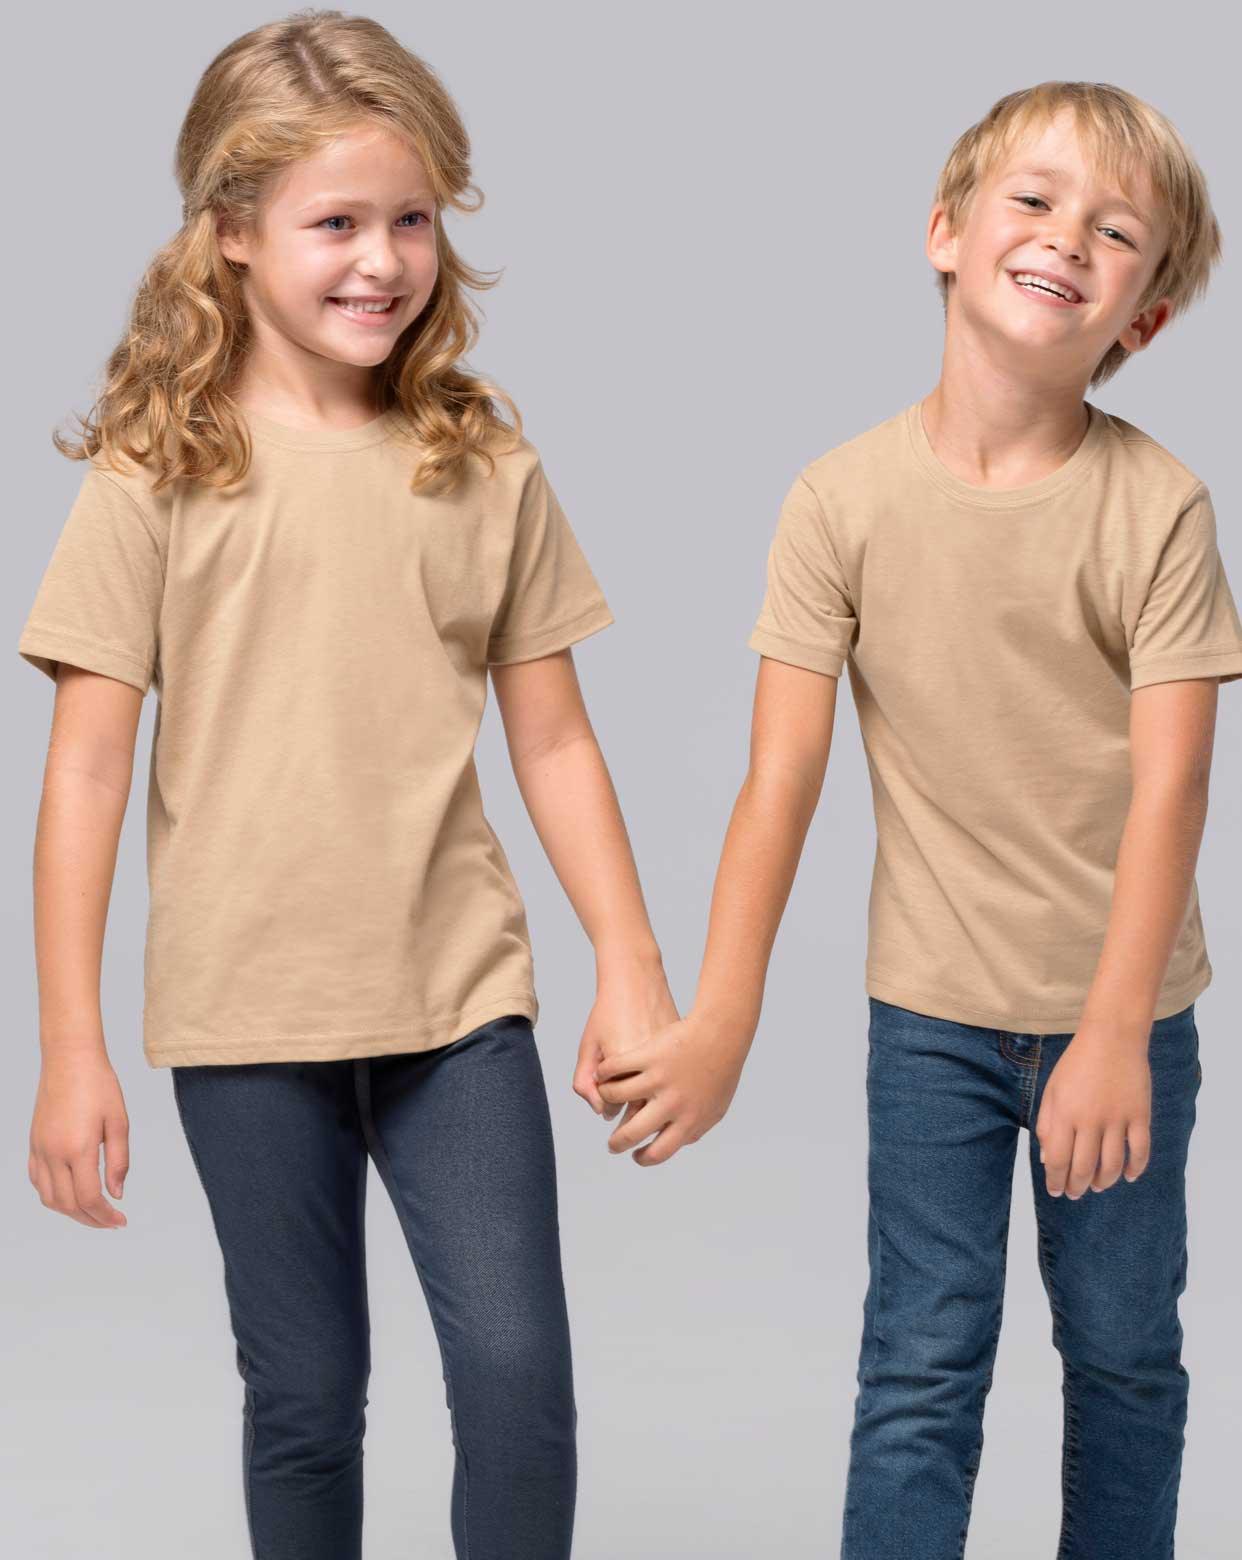 Camisetas niños - Lunar Boutique